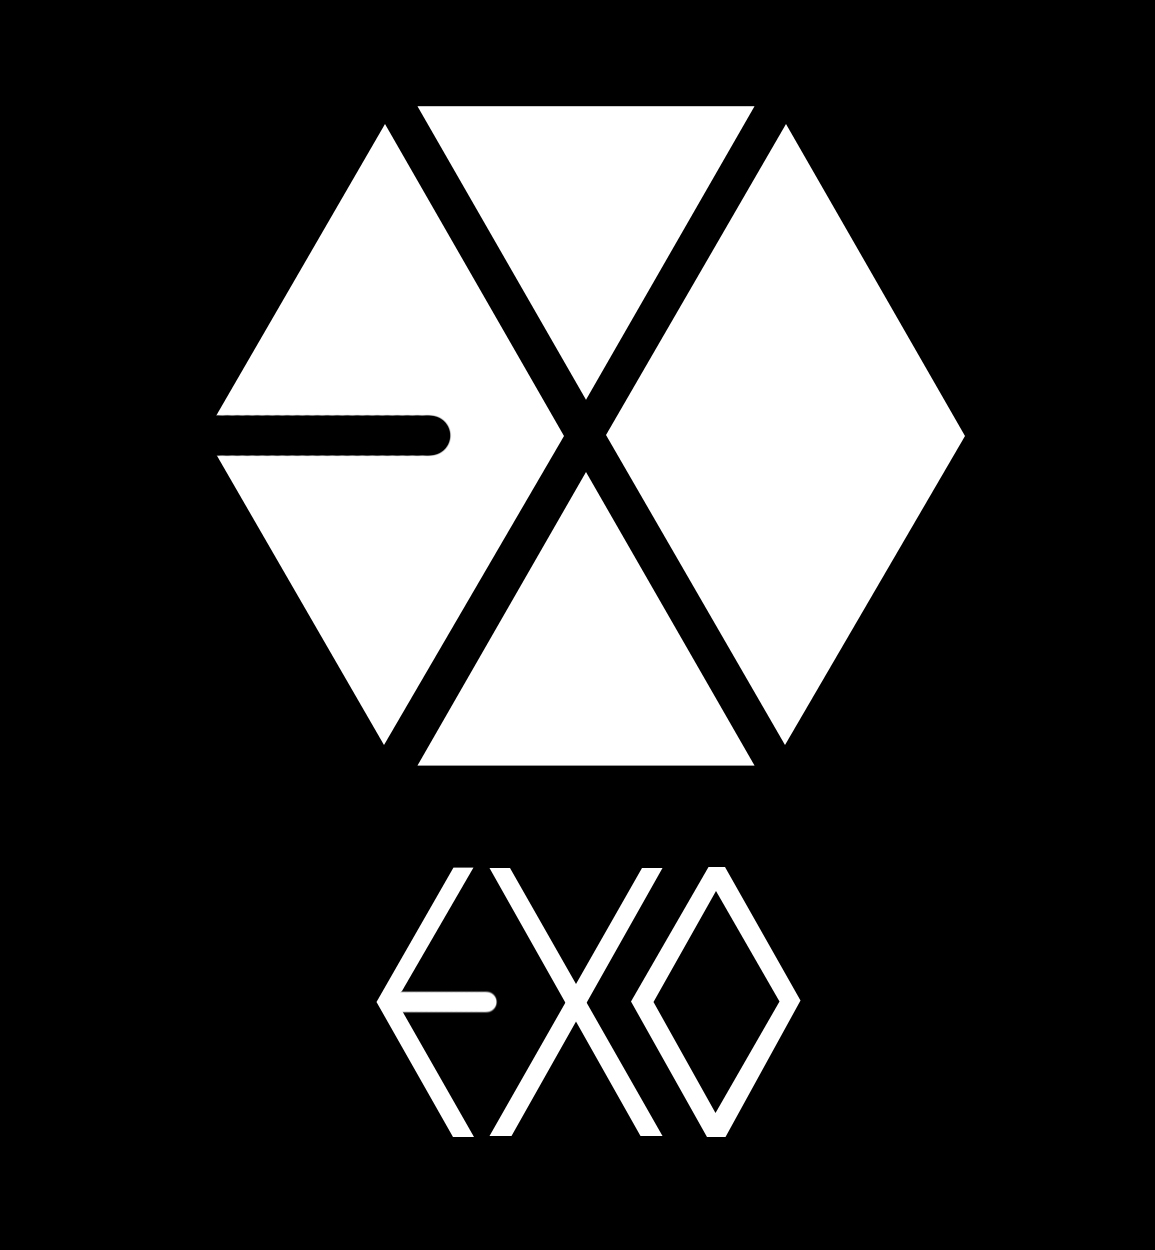  48 EXO Logo  Wallpaper on WallpaperSafari